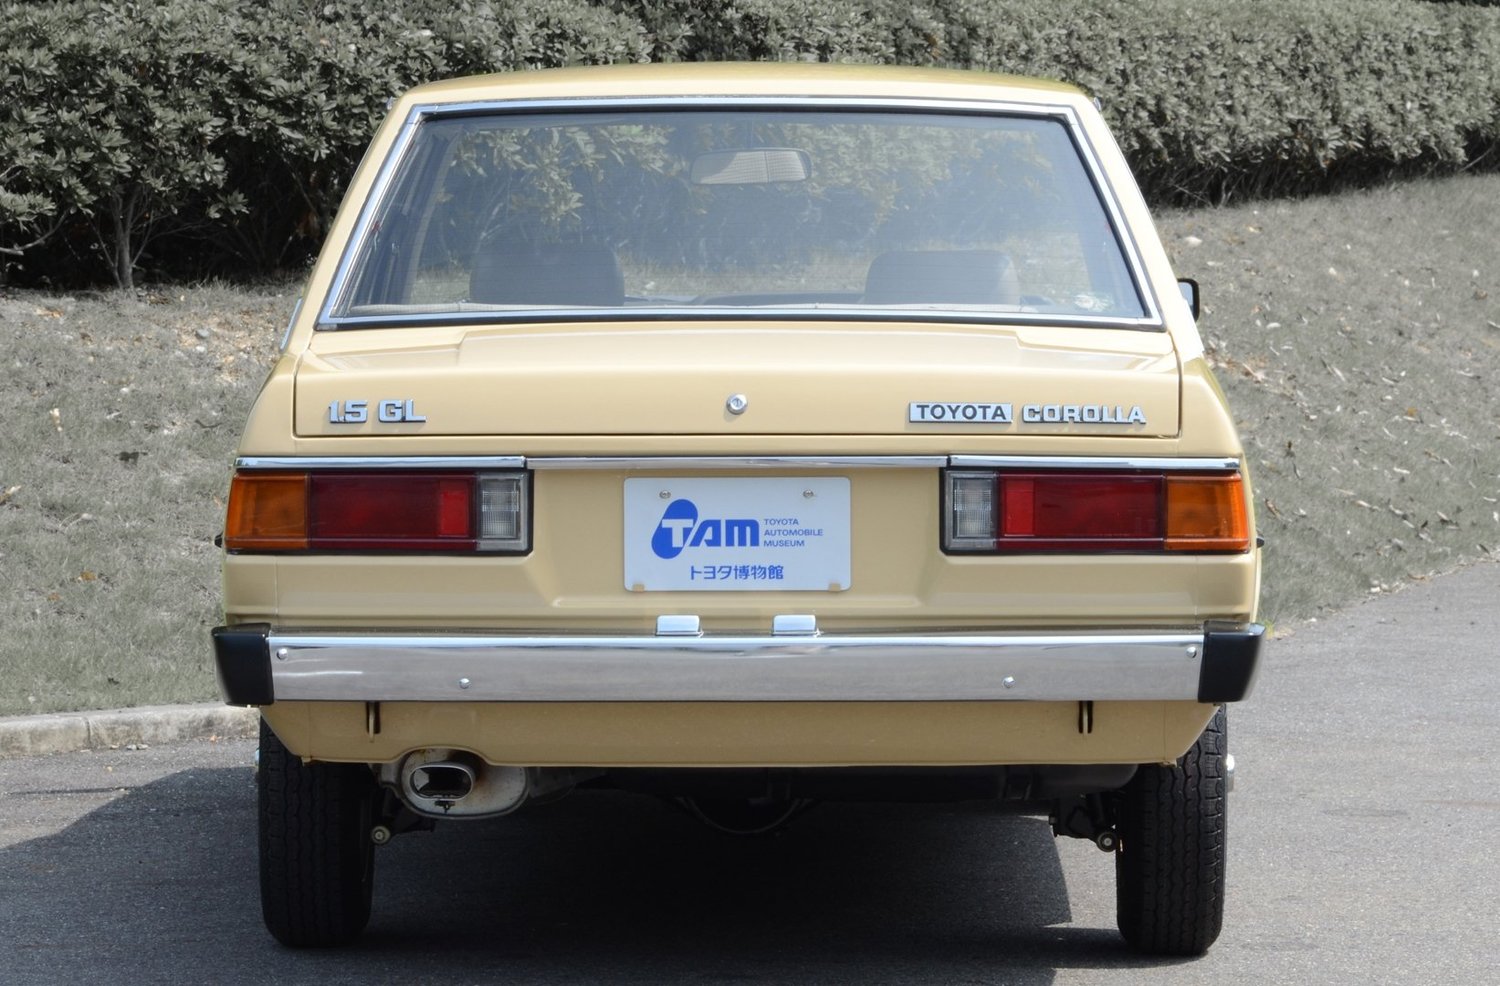 седан Toyota Corolla 1979 - 1983г выпуска модификация 1.3 MT (60 л.с.)